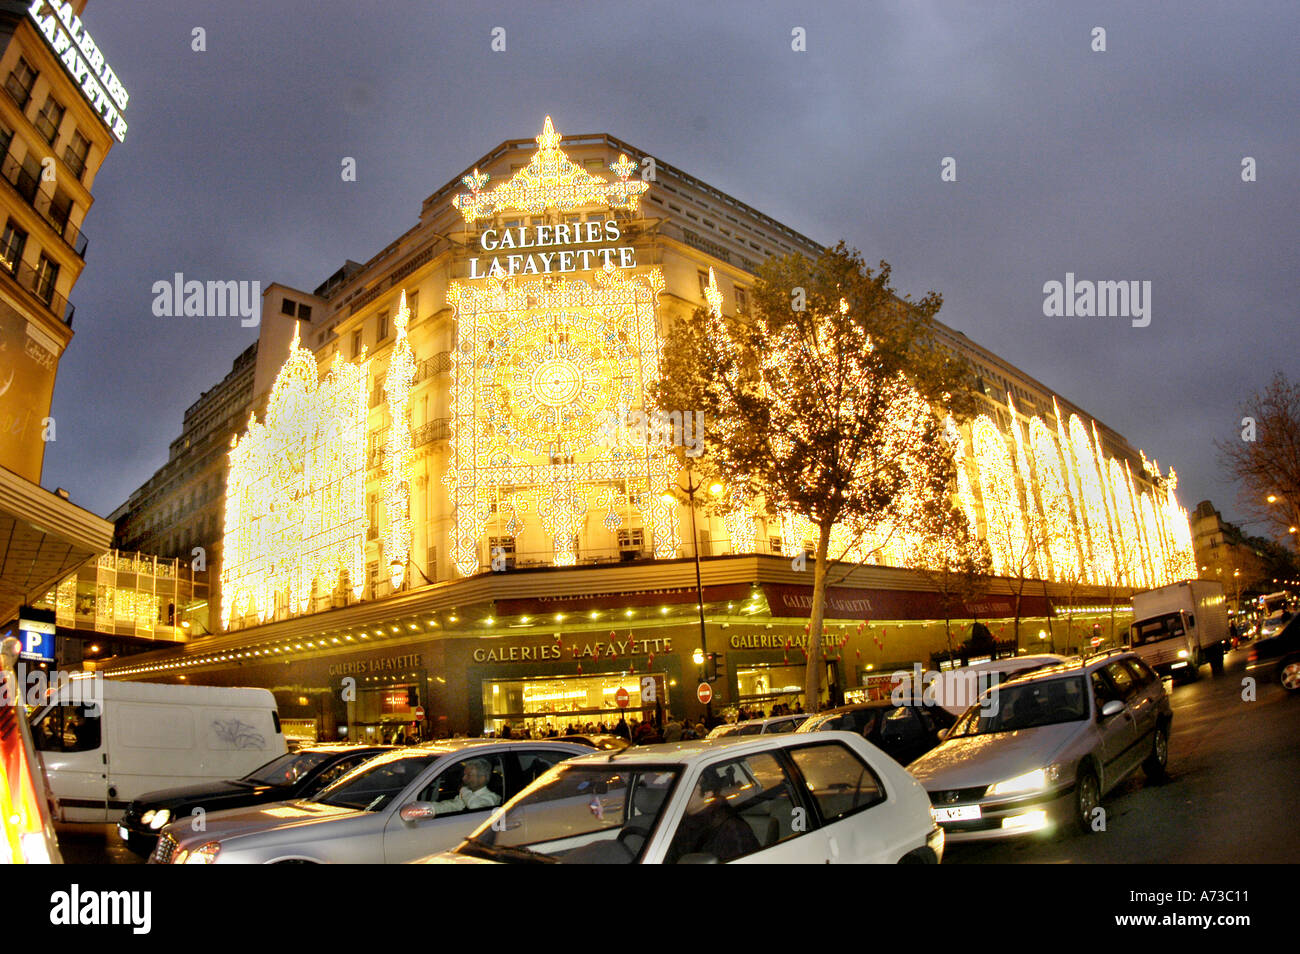 Department Store, París Francia, "Galeries Lafayette" Dept Store con iluminación especial para Navidad iluminado de noche Foto de stock